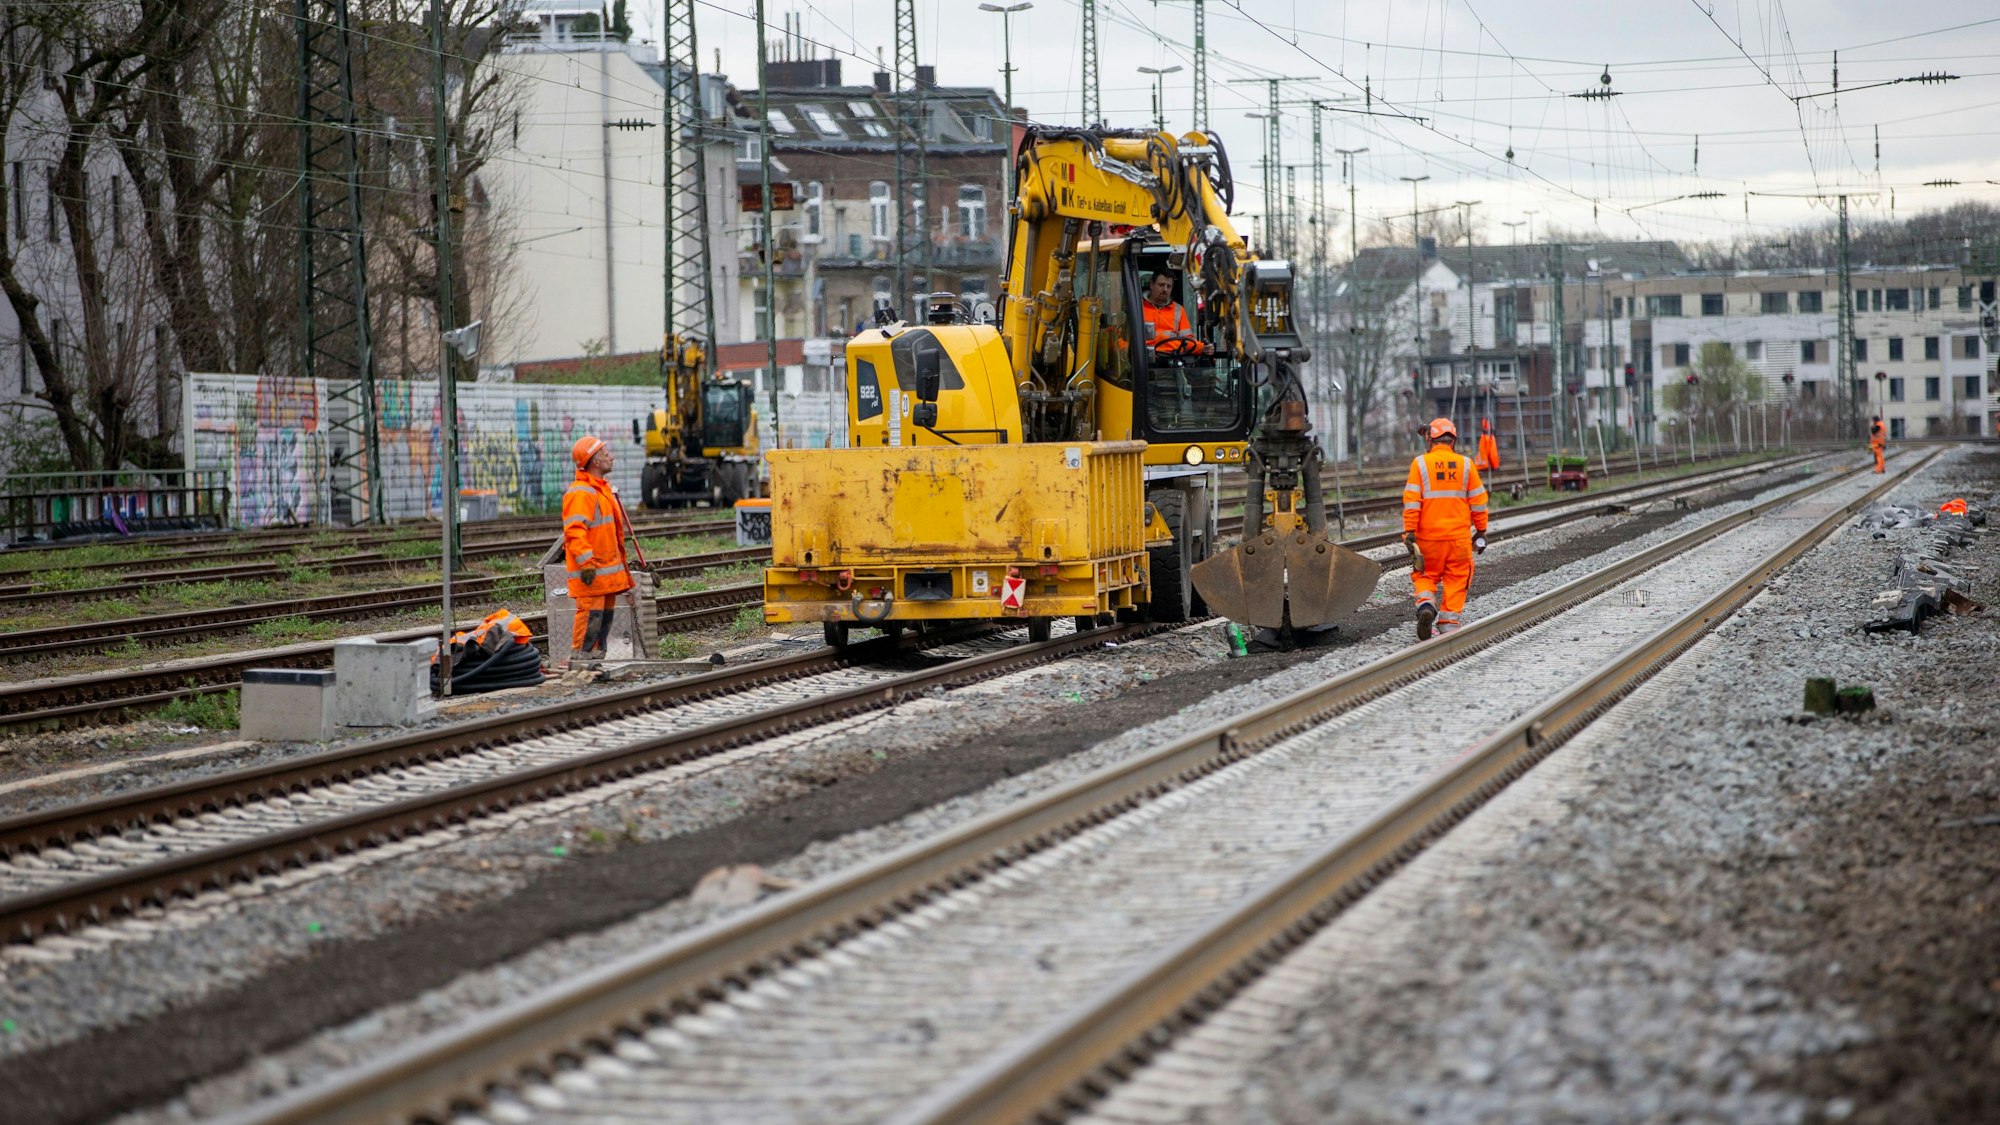 Umfangreiche Bauarbeiten führt die Bahn im Bahnhof Köln-West durch. Der helle Schotter zeigt, welche Gleise erneuert wurden.